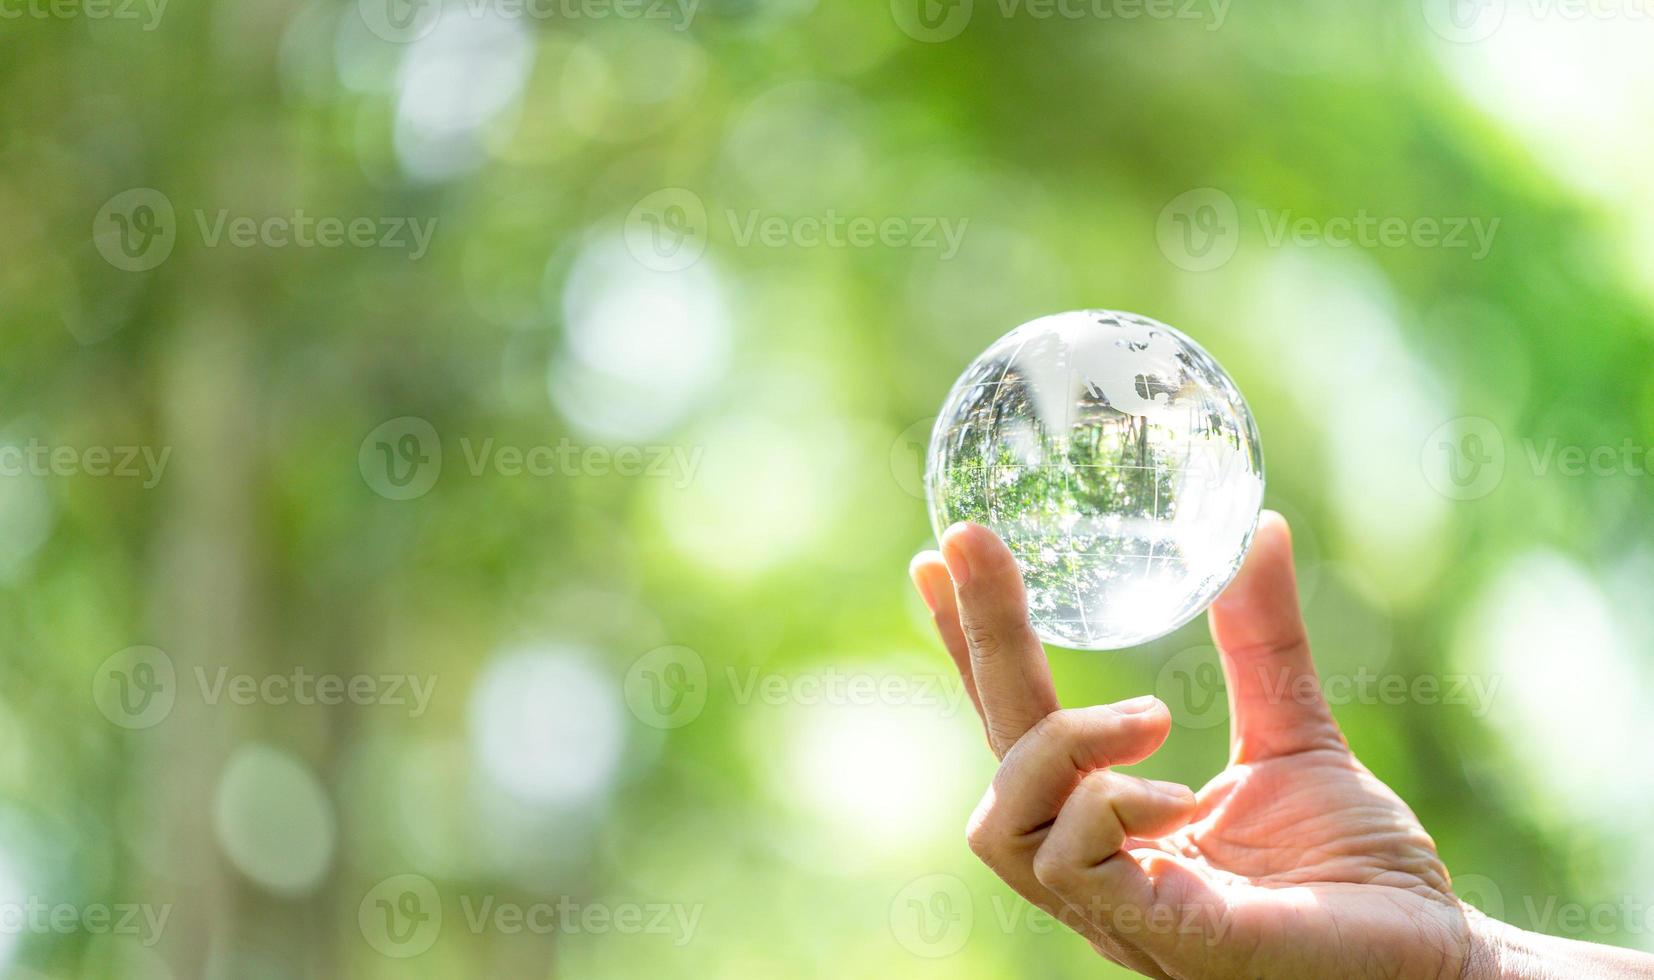 bola de cristal usada como um objeto revelador. parque natural com árvores ao fundo. mão para ambiental, social e governança em negócios sustentáveis e éticos em fundo verde. foto